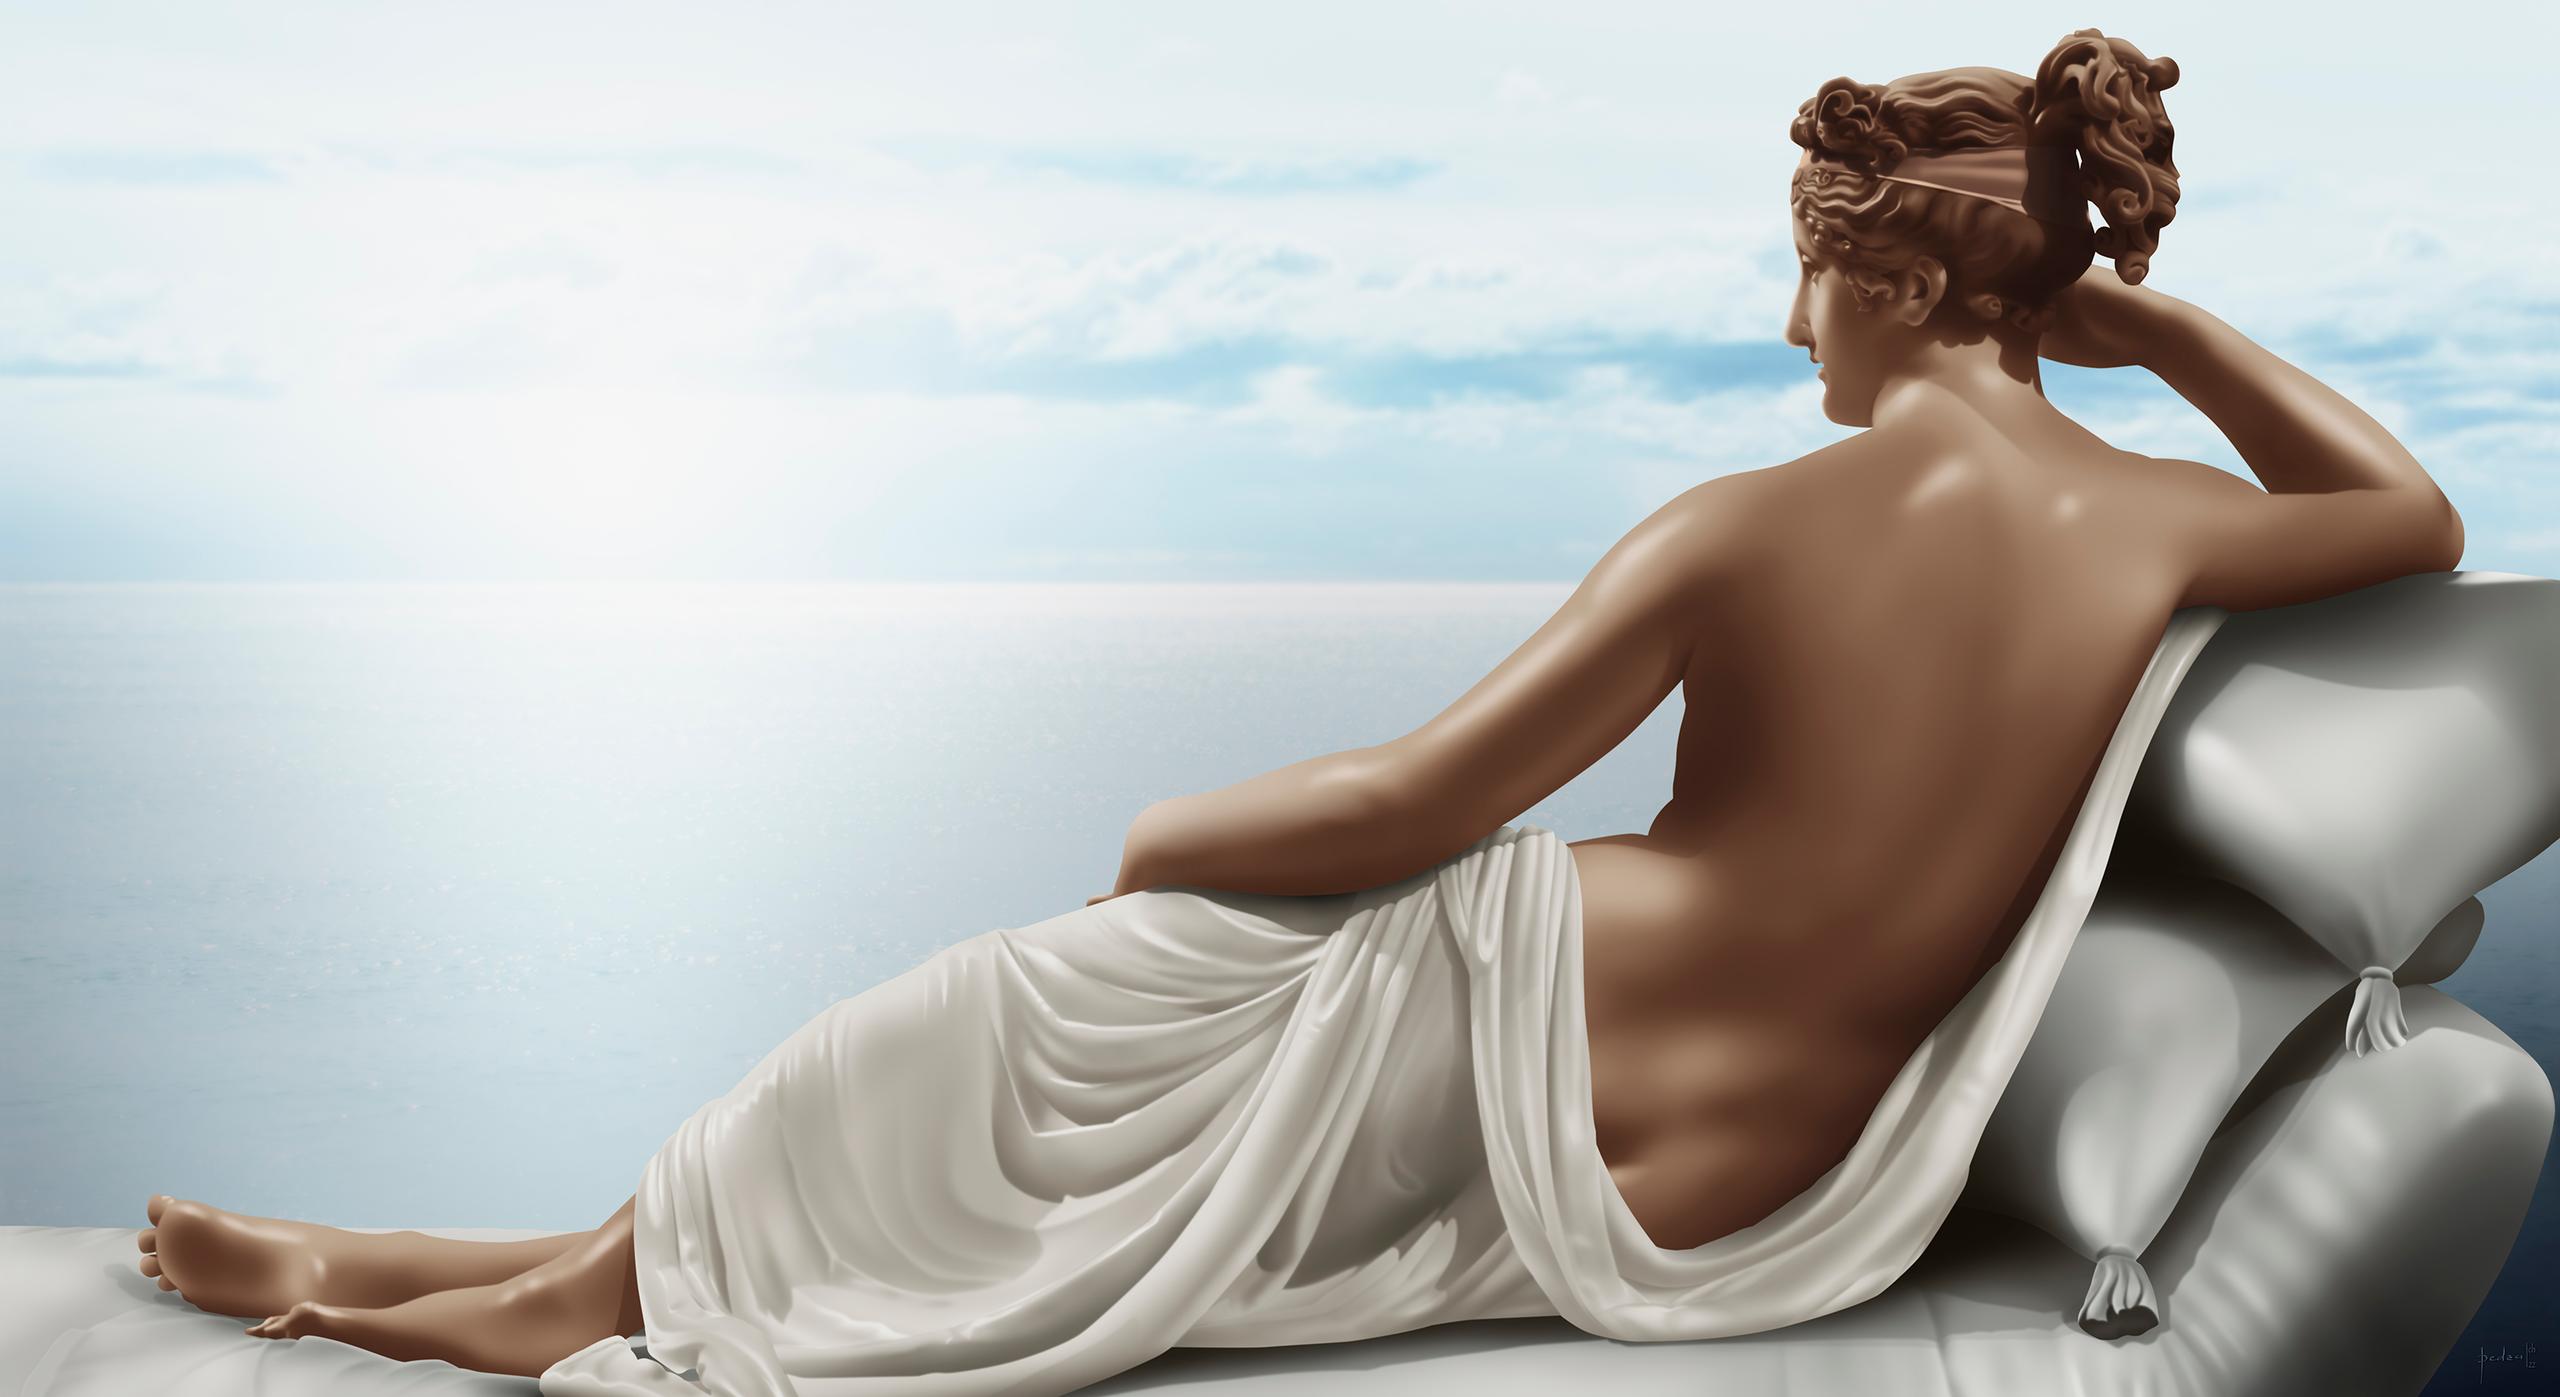 Painting inspired by: Pauline Borghese as Venus - Antonio Canova